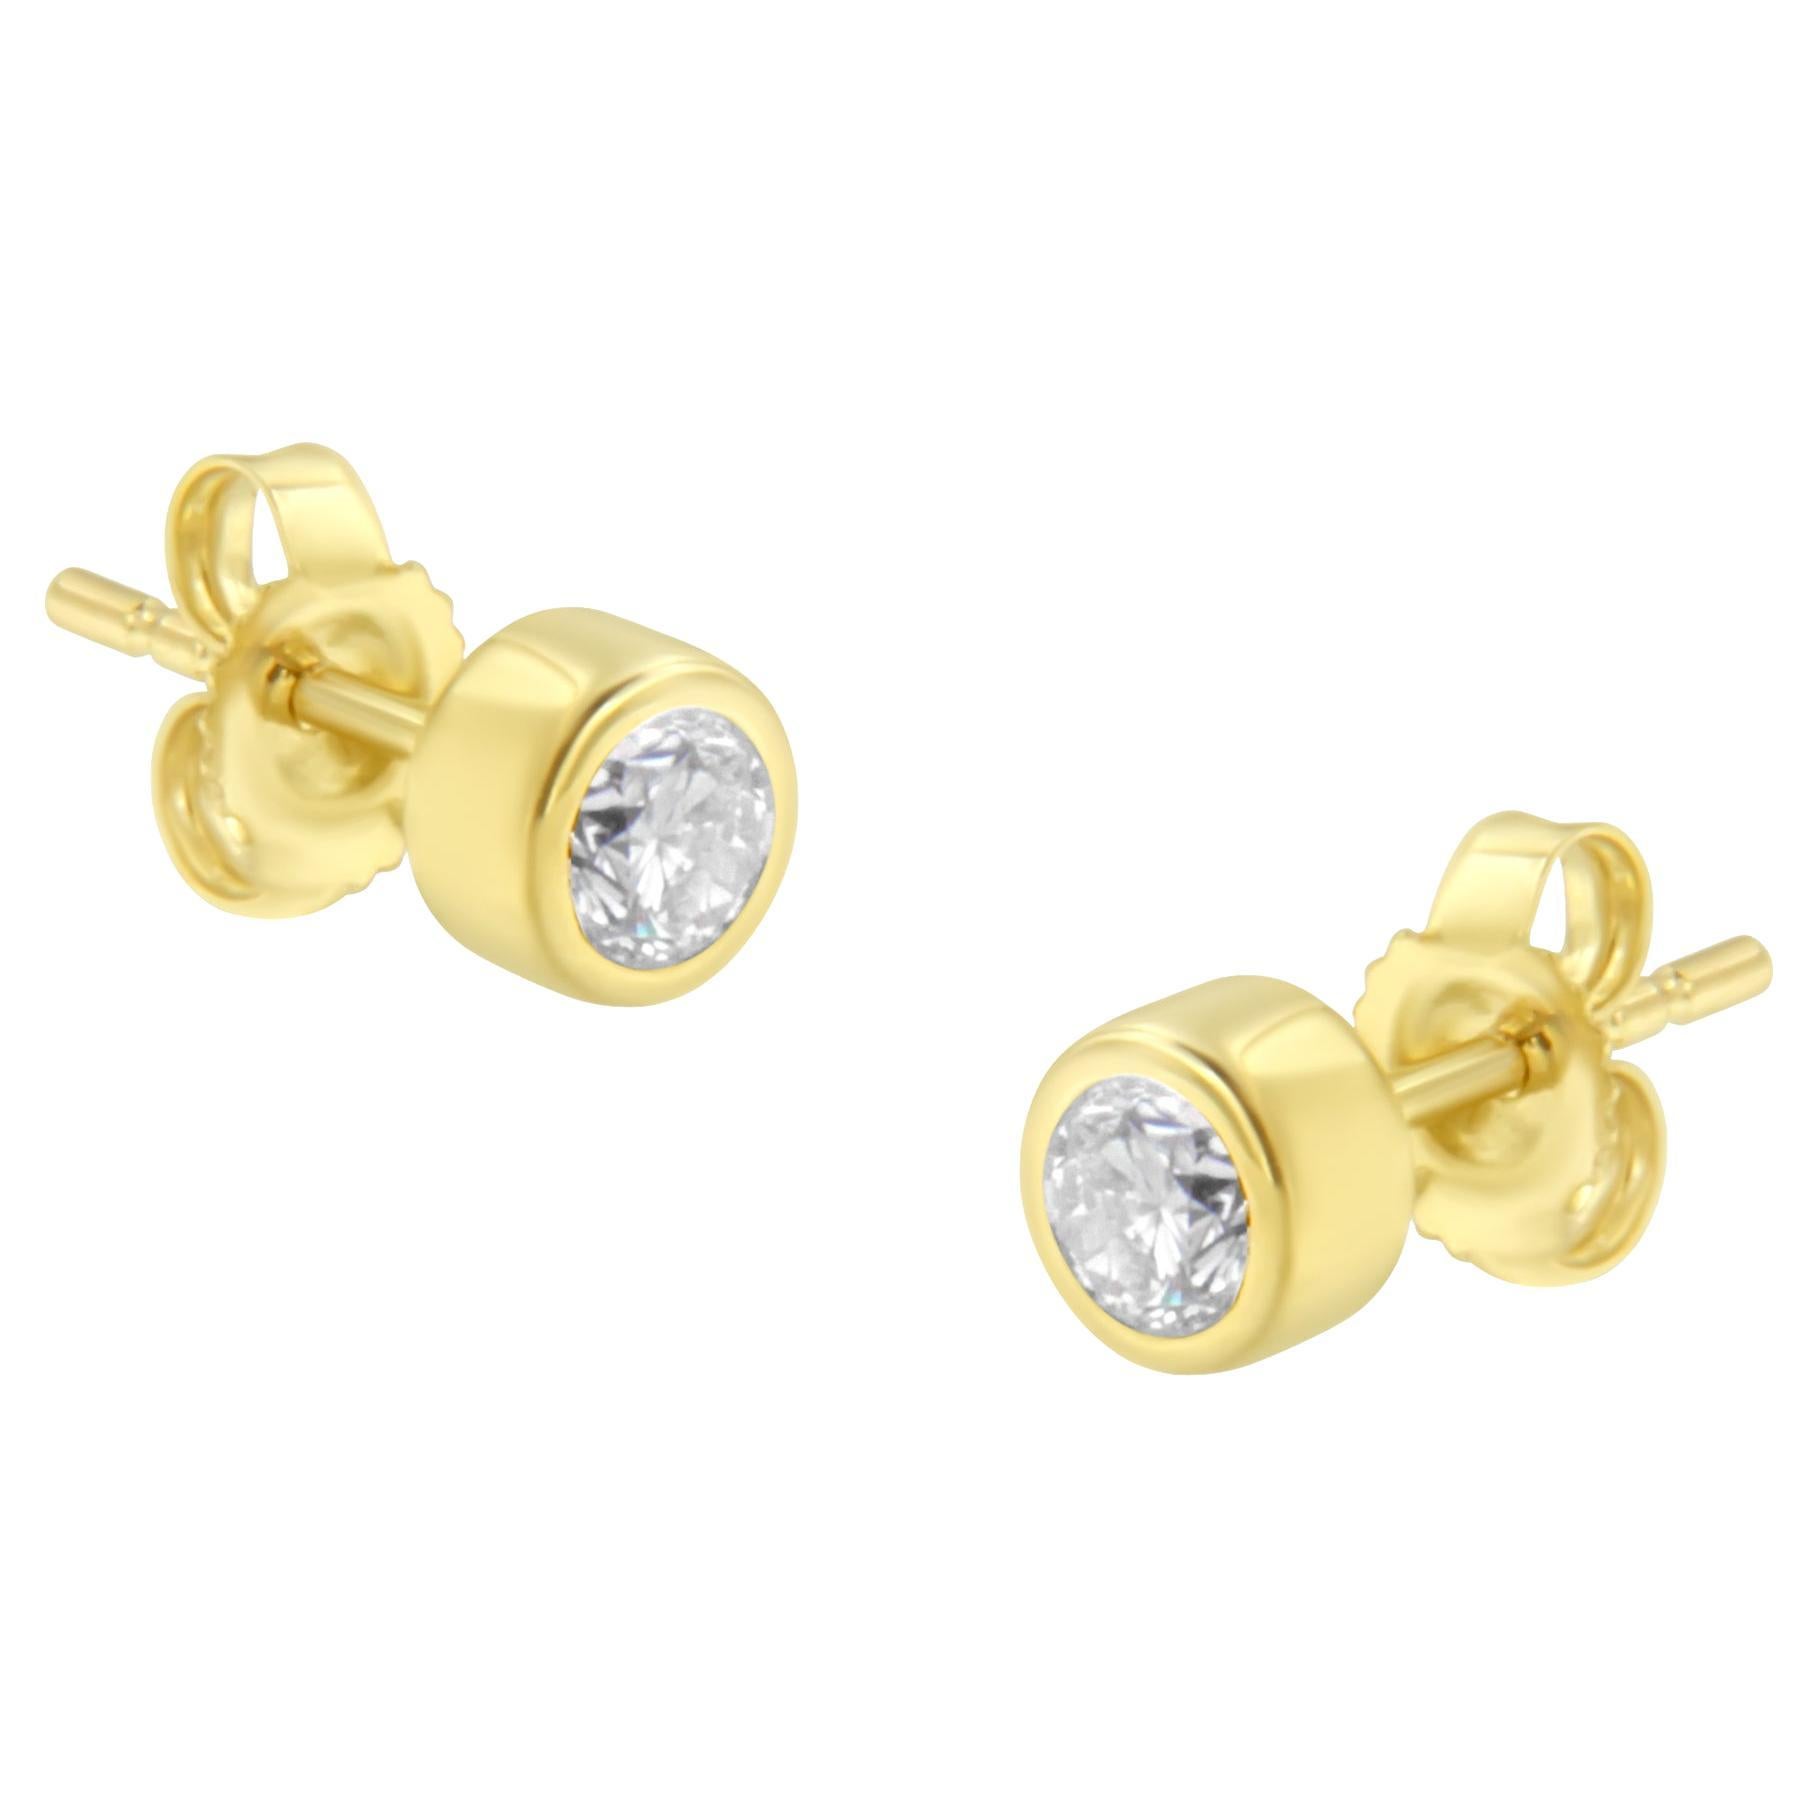 10K Yellow Gold 1/3 Carat Diamond Bezel Stud Earrings